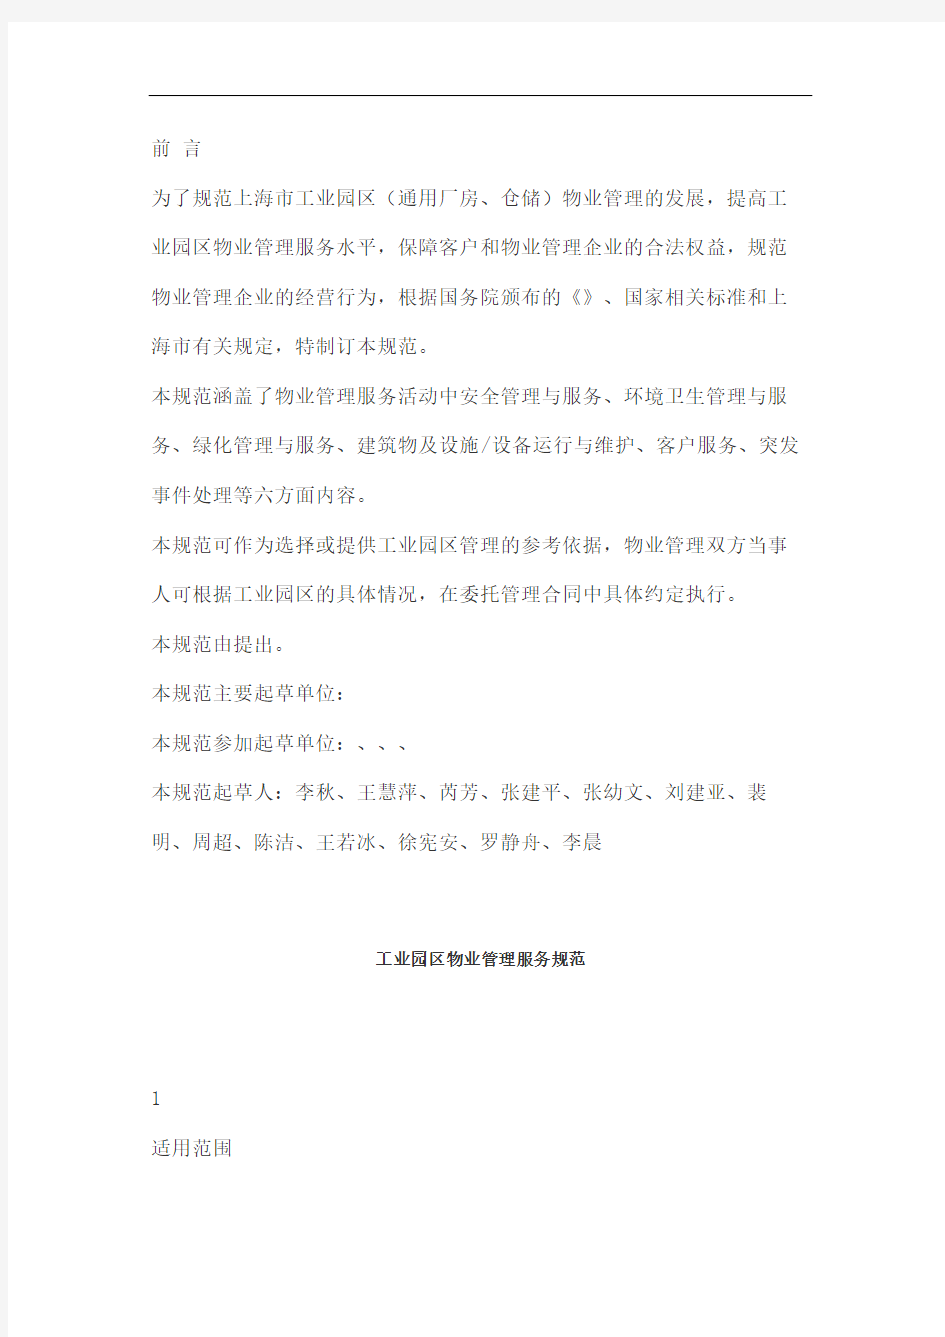 上海工业园区物业管理服务规范图文稿